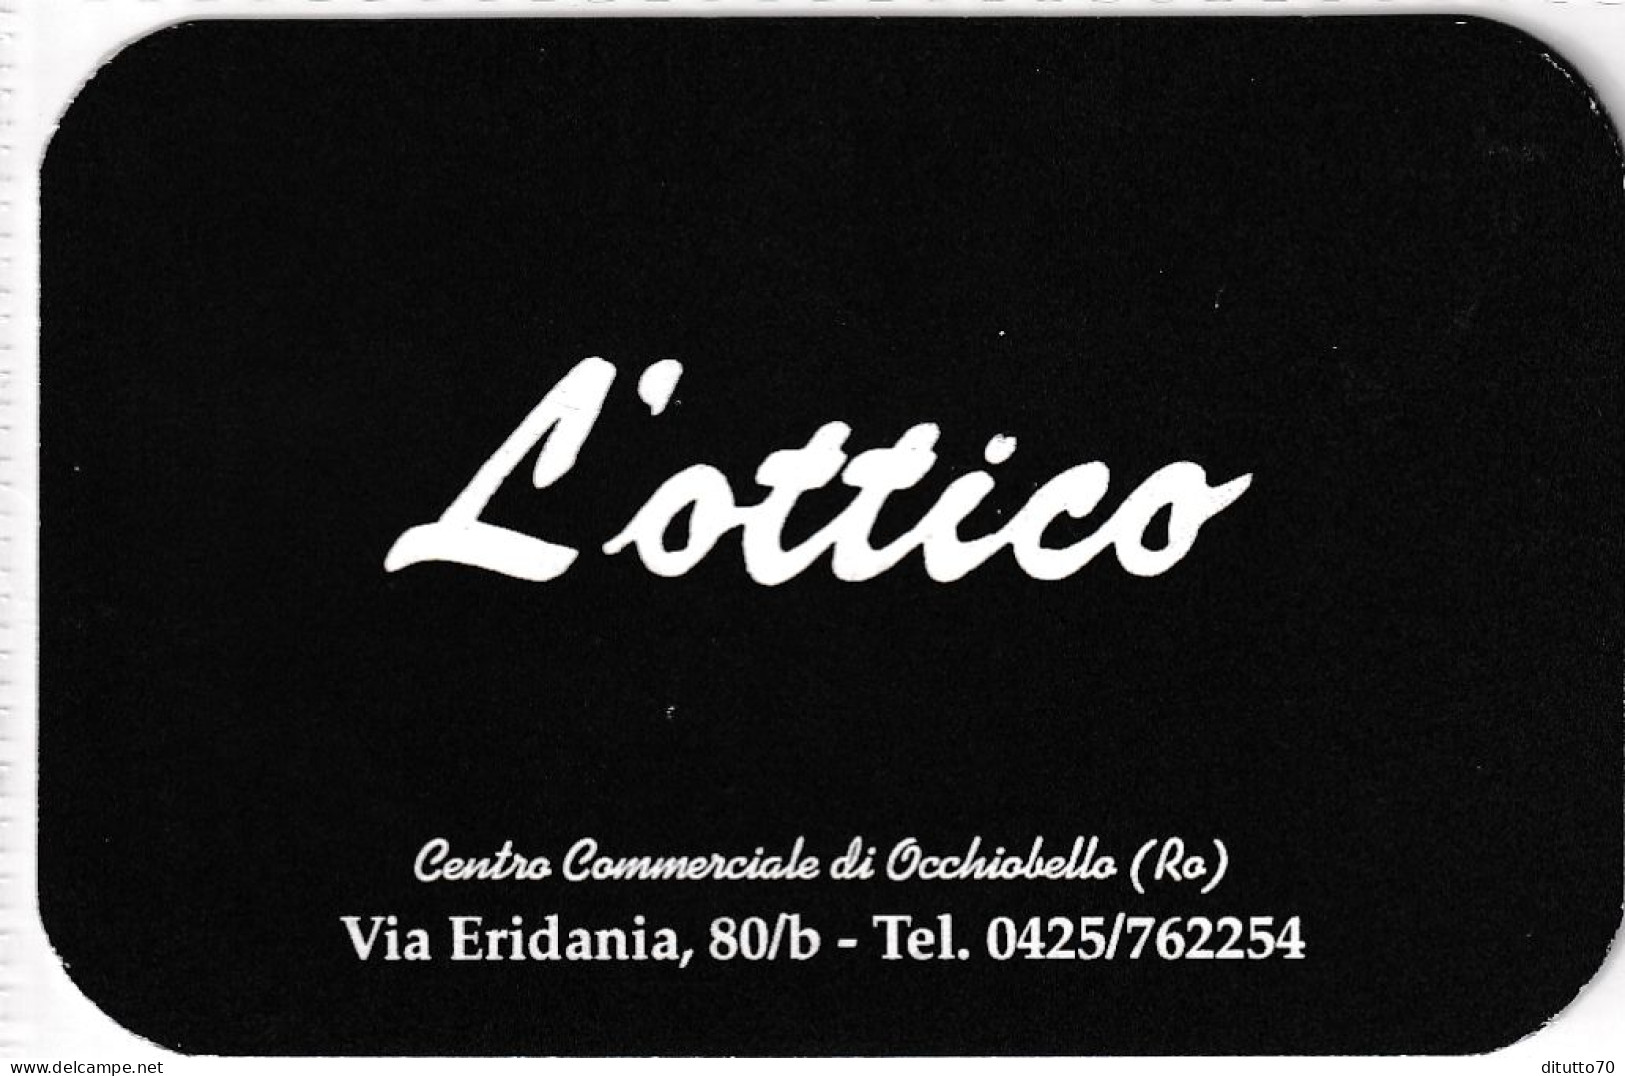 Calendarietto - L'ottico - Rovigo - Anno 1998 - Kleinformat : 1991-00